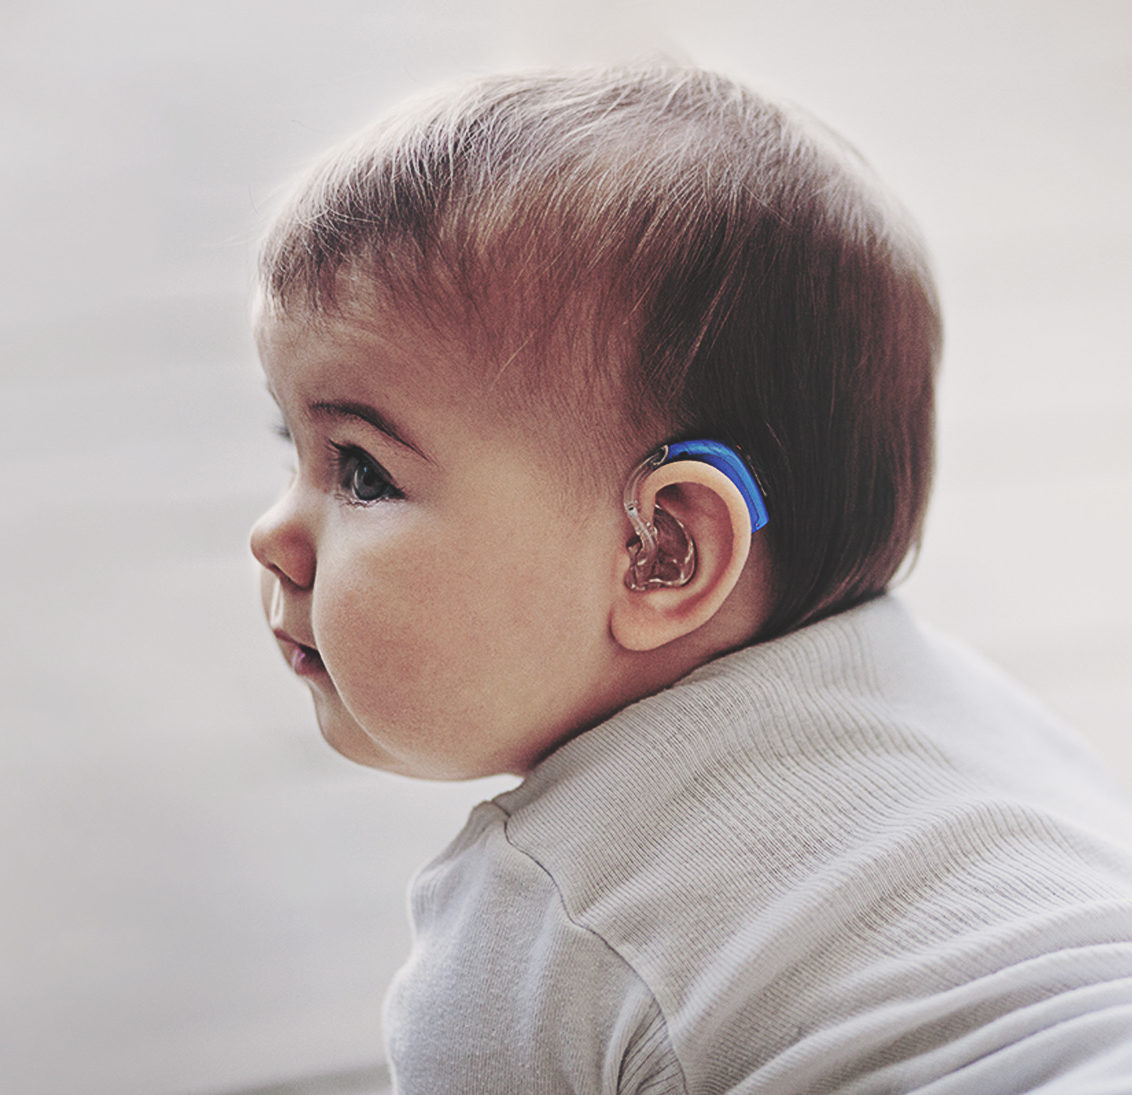 Глухота аномалия. Слуховой аппарат для детей. Дети с нарушением слуха.. Слуховой аппарат для глухих детей. Глухие и слабослышащие дети.